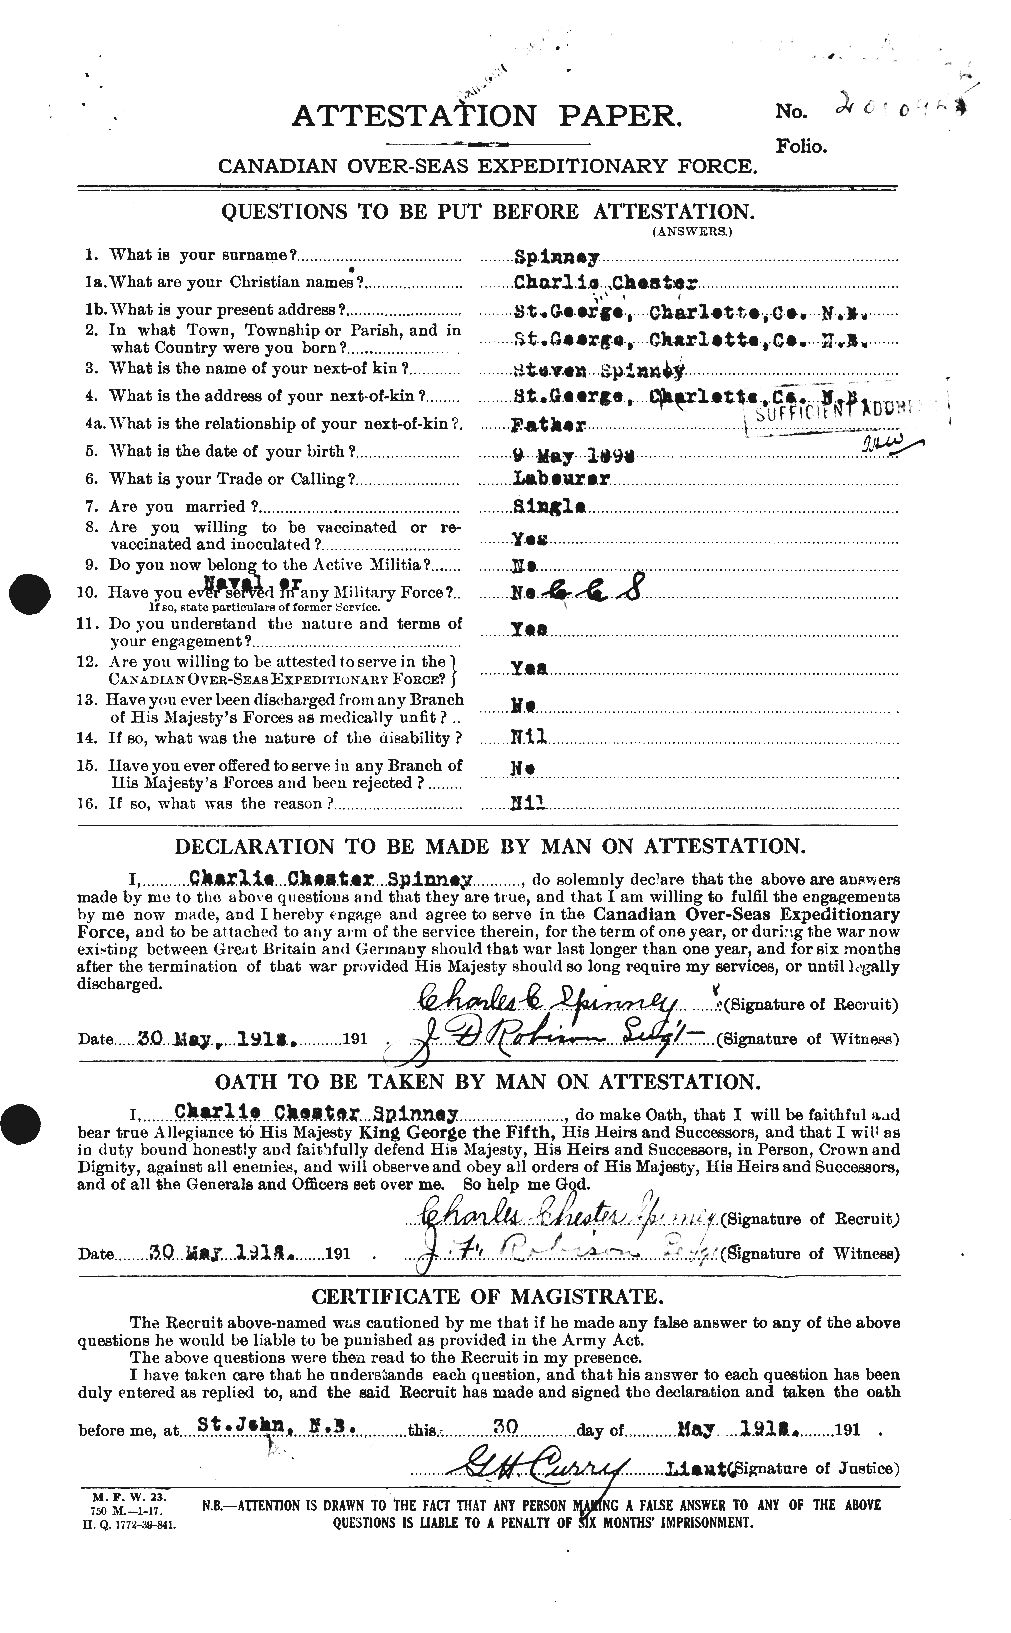 Dossiers du Personnel de la Première Guerre mondiale - CEC 114426a